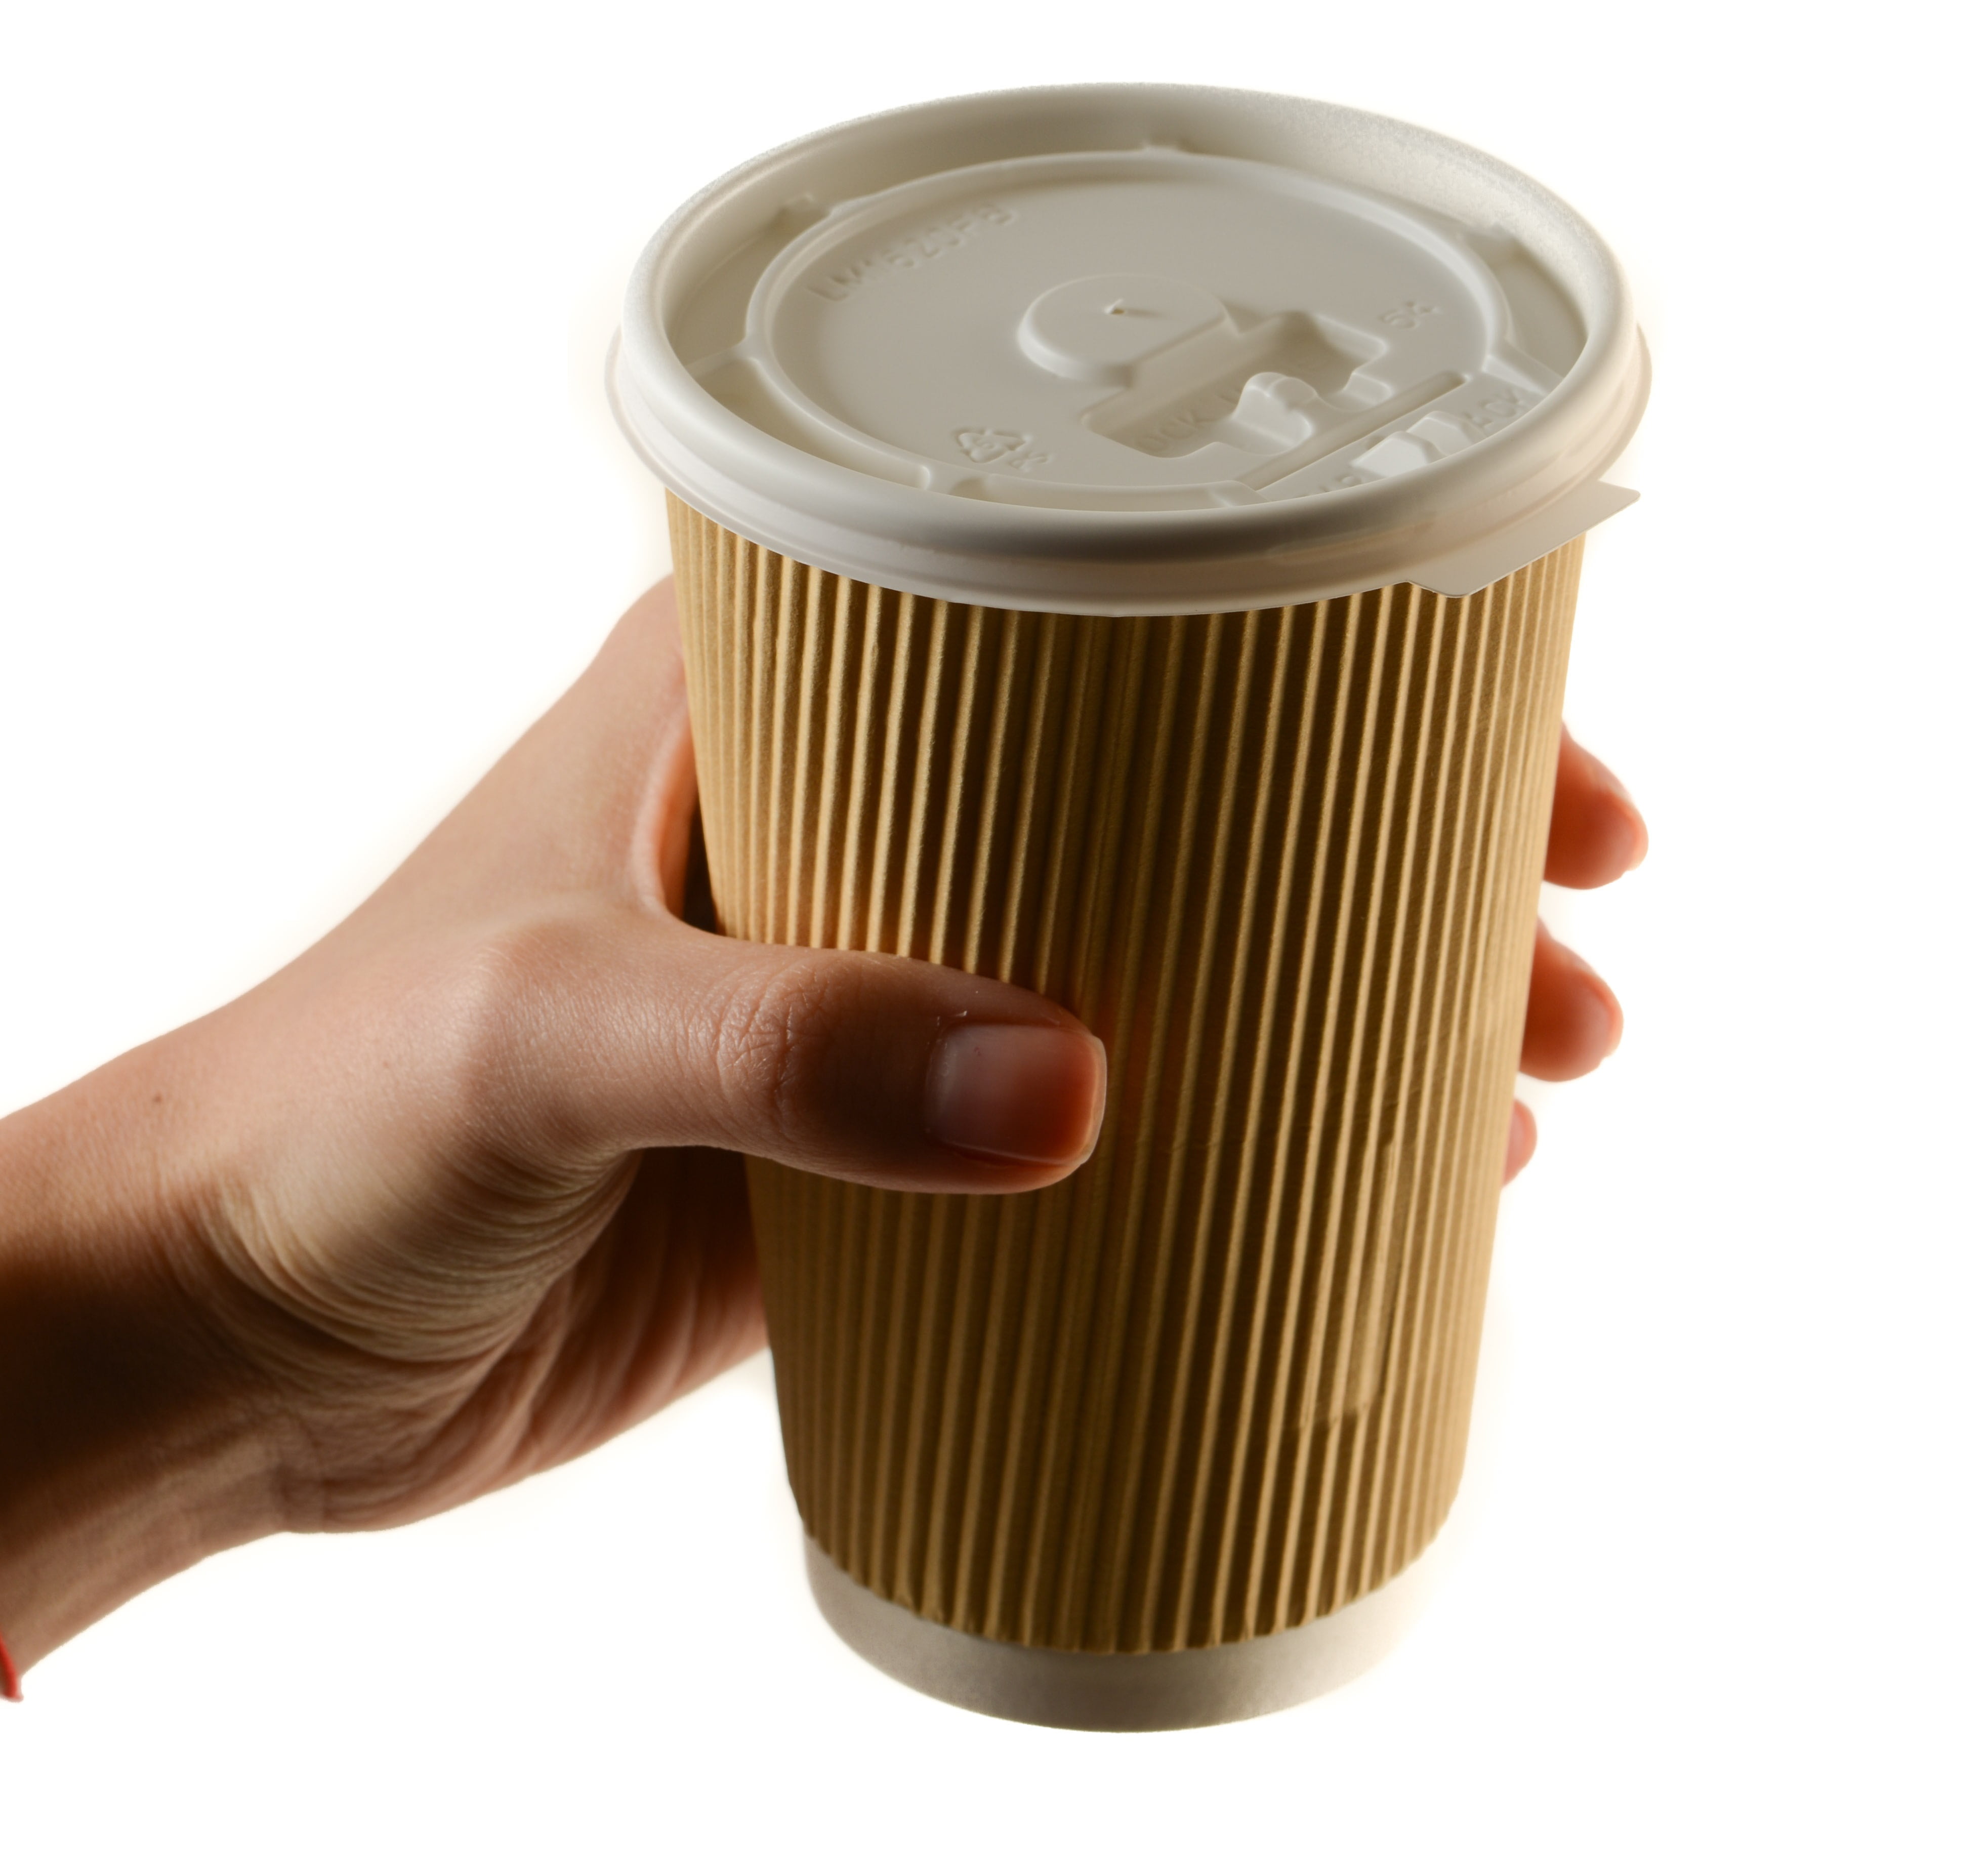 Bulk Case Disposable Paper Coffee Tea Cups Sip Lids 4oz 8oz 10oz 12oz 16oz 20oz 